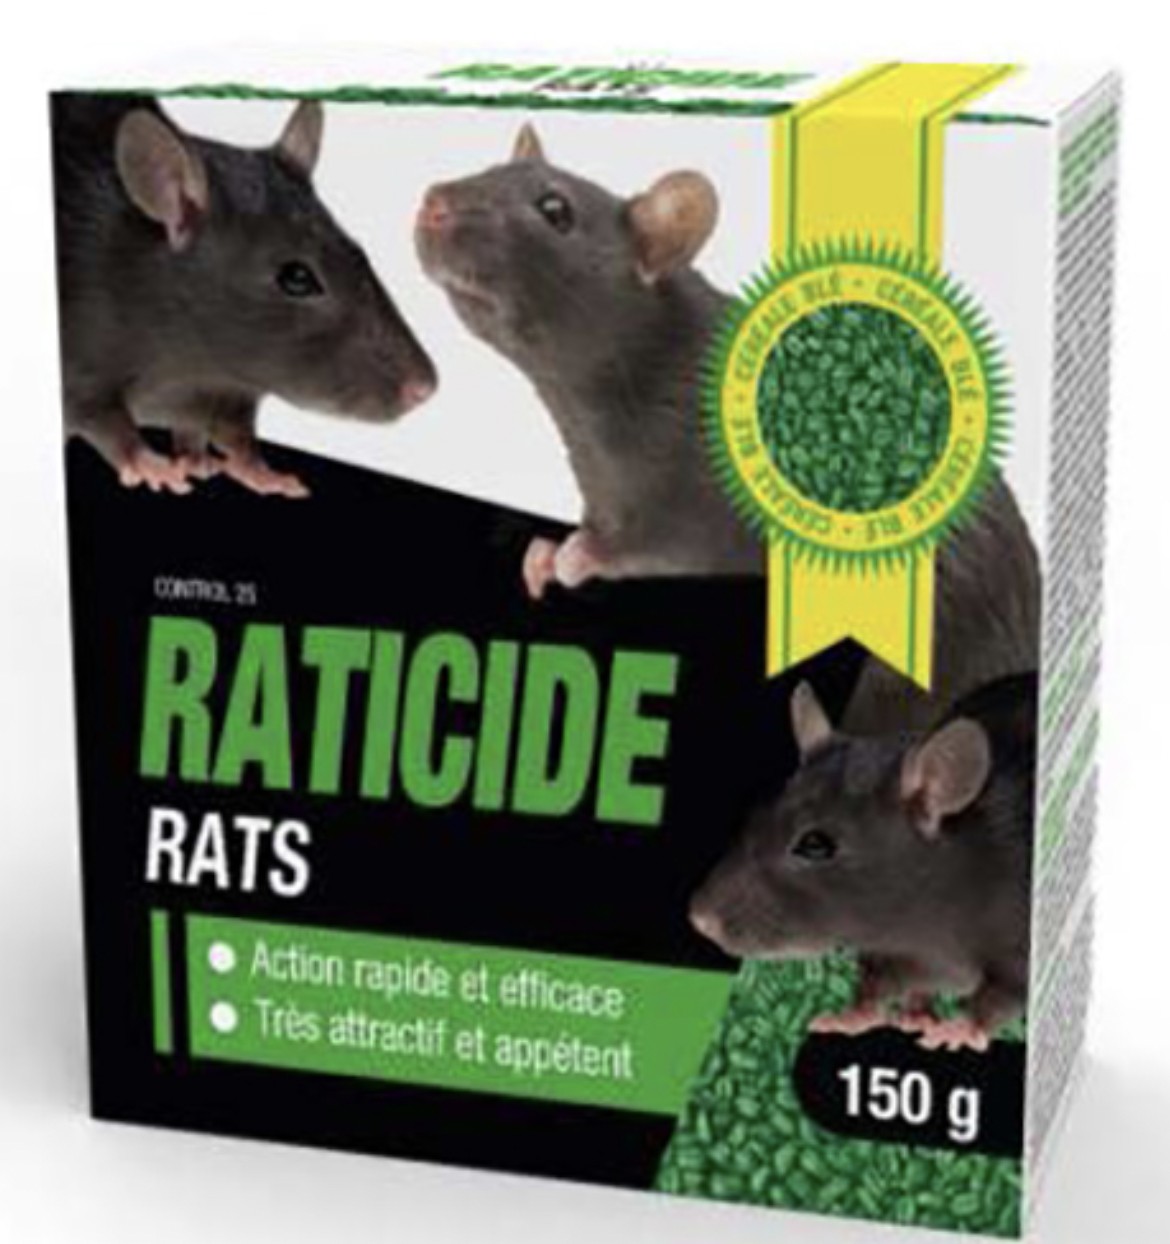 Alto Raticide/Souricide spécial Souris et Rats – Appâts